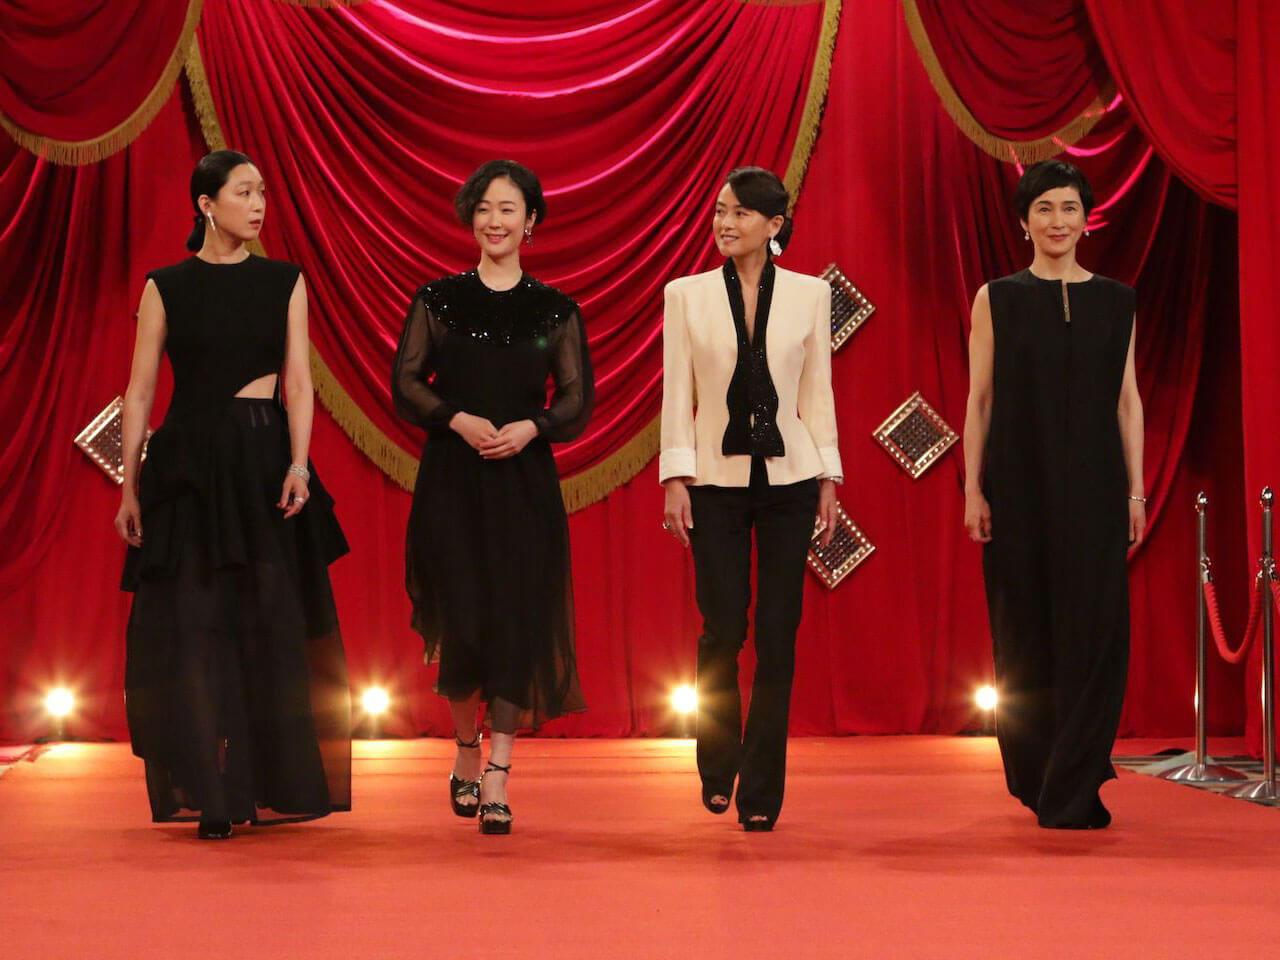 助演女優賞 女優部門の受賞者は、江口のりこさん、黒木華さん、後藤久美子さん、安田成美さん